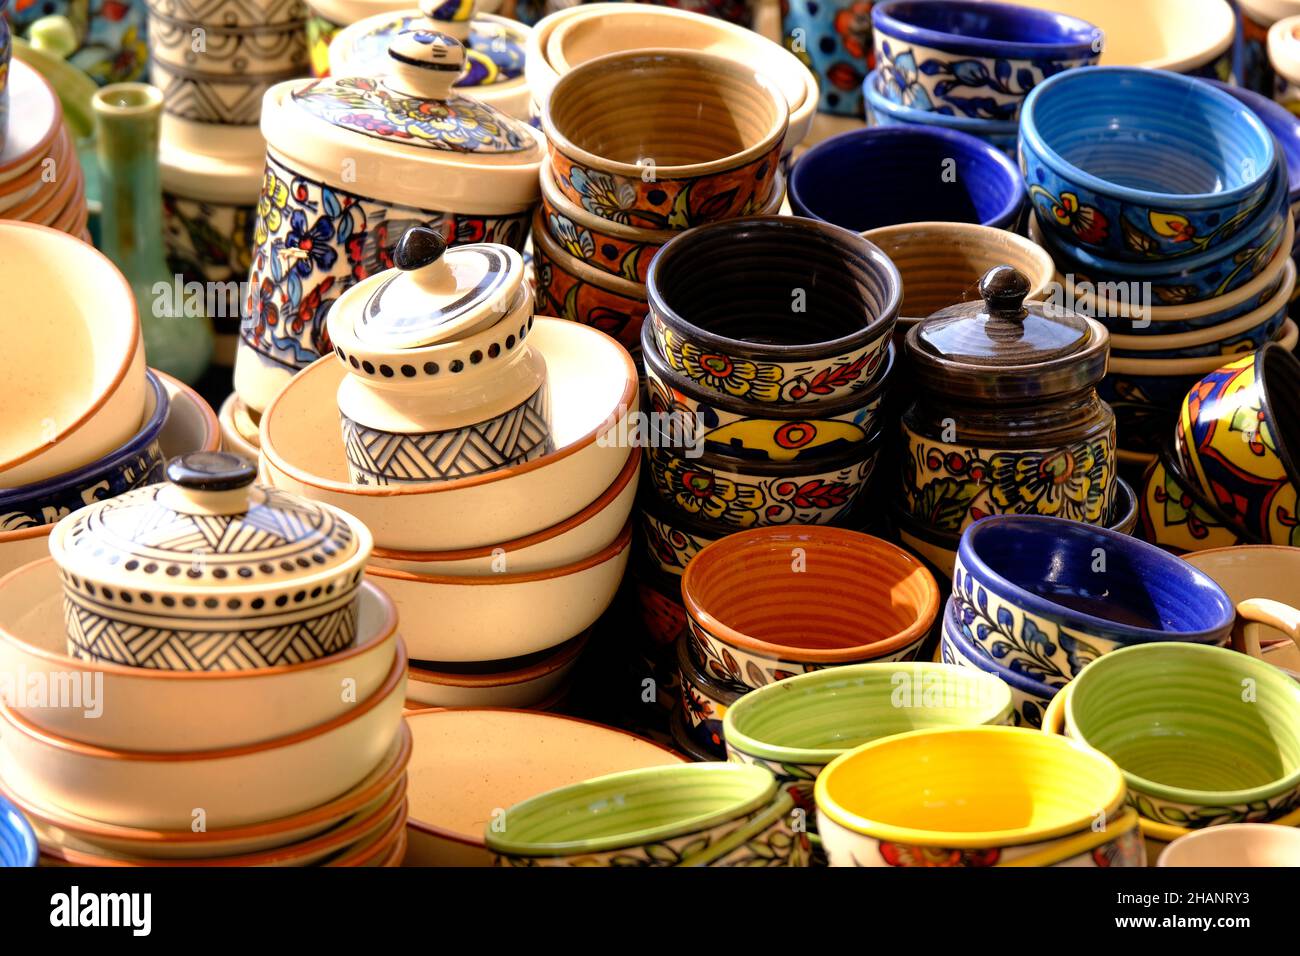 Ein Straßenladen mit orientalischer Keramik. Teekannen, Teller und Schüsseln. Schüsseln, Teller und Teetassen im Souvenirladen in Pune, Verkauf während des Festivals, Traditiona Stockfoto